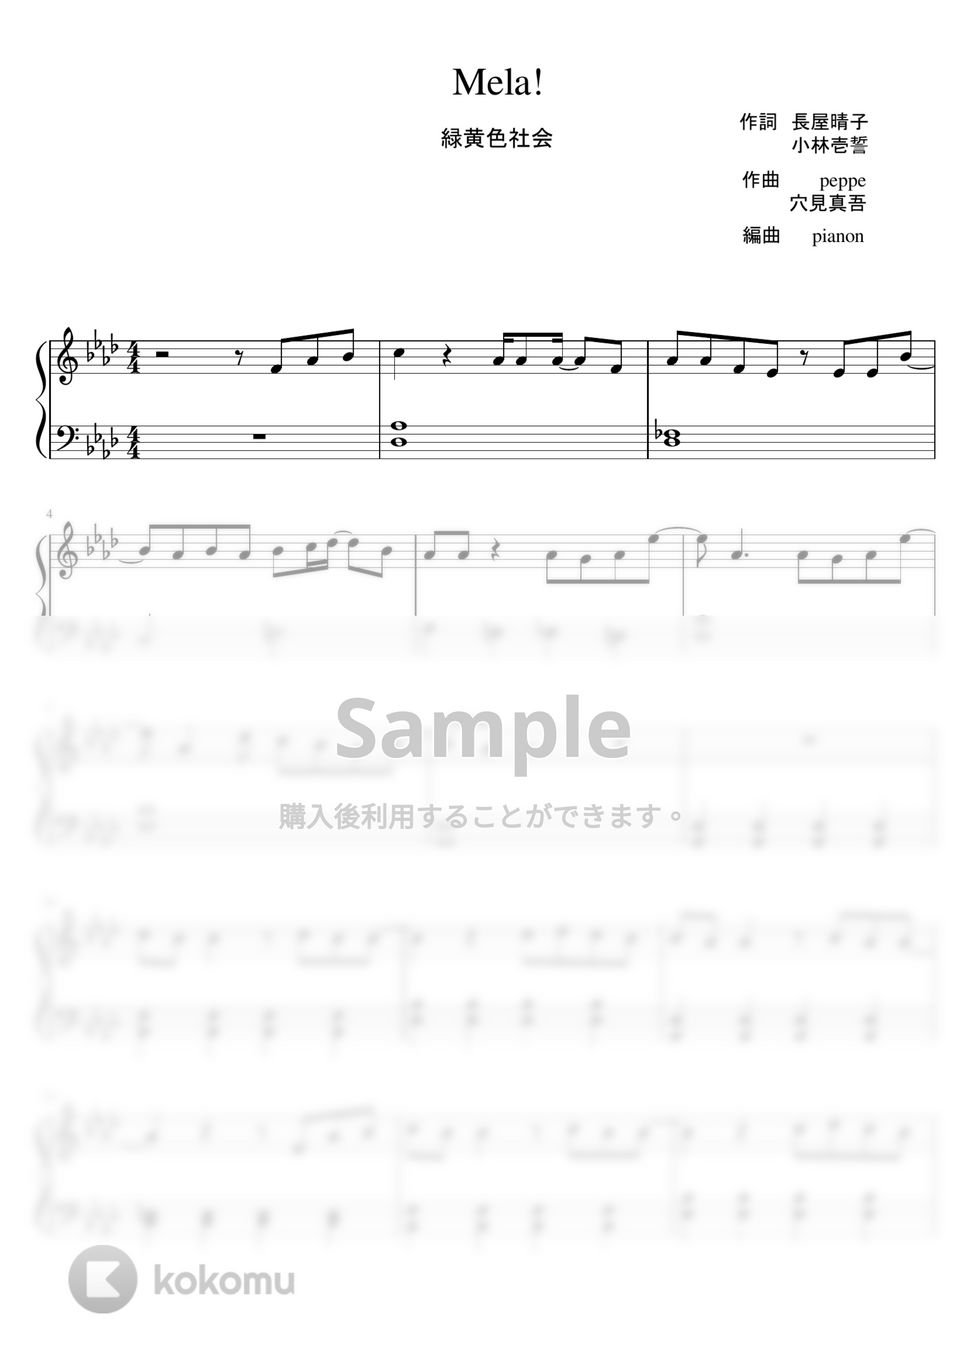 緑黄色社会 - Mela! (ピアノソロ初級) by pianon